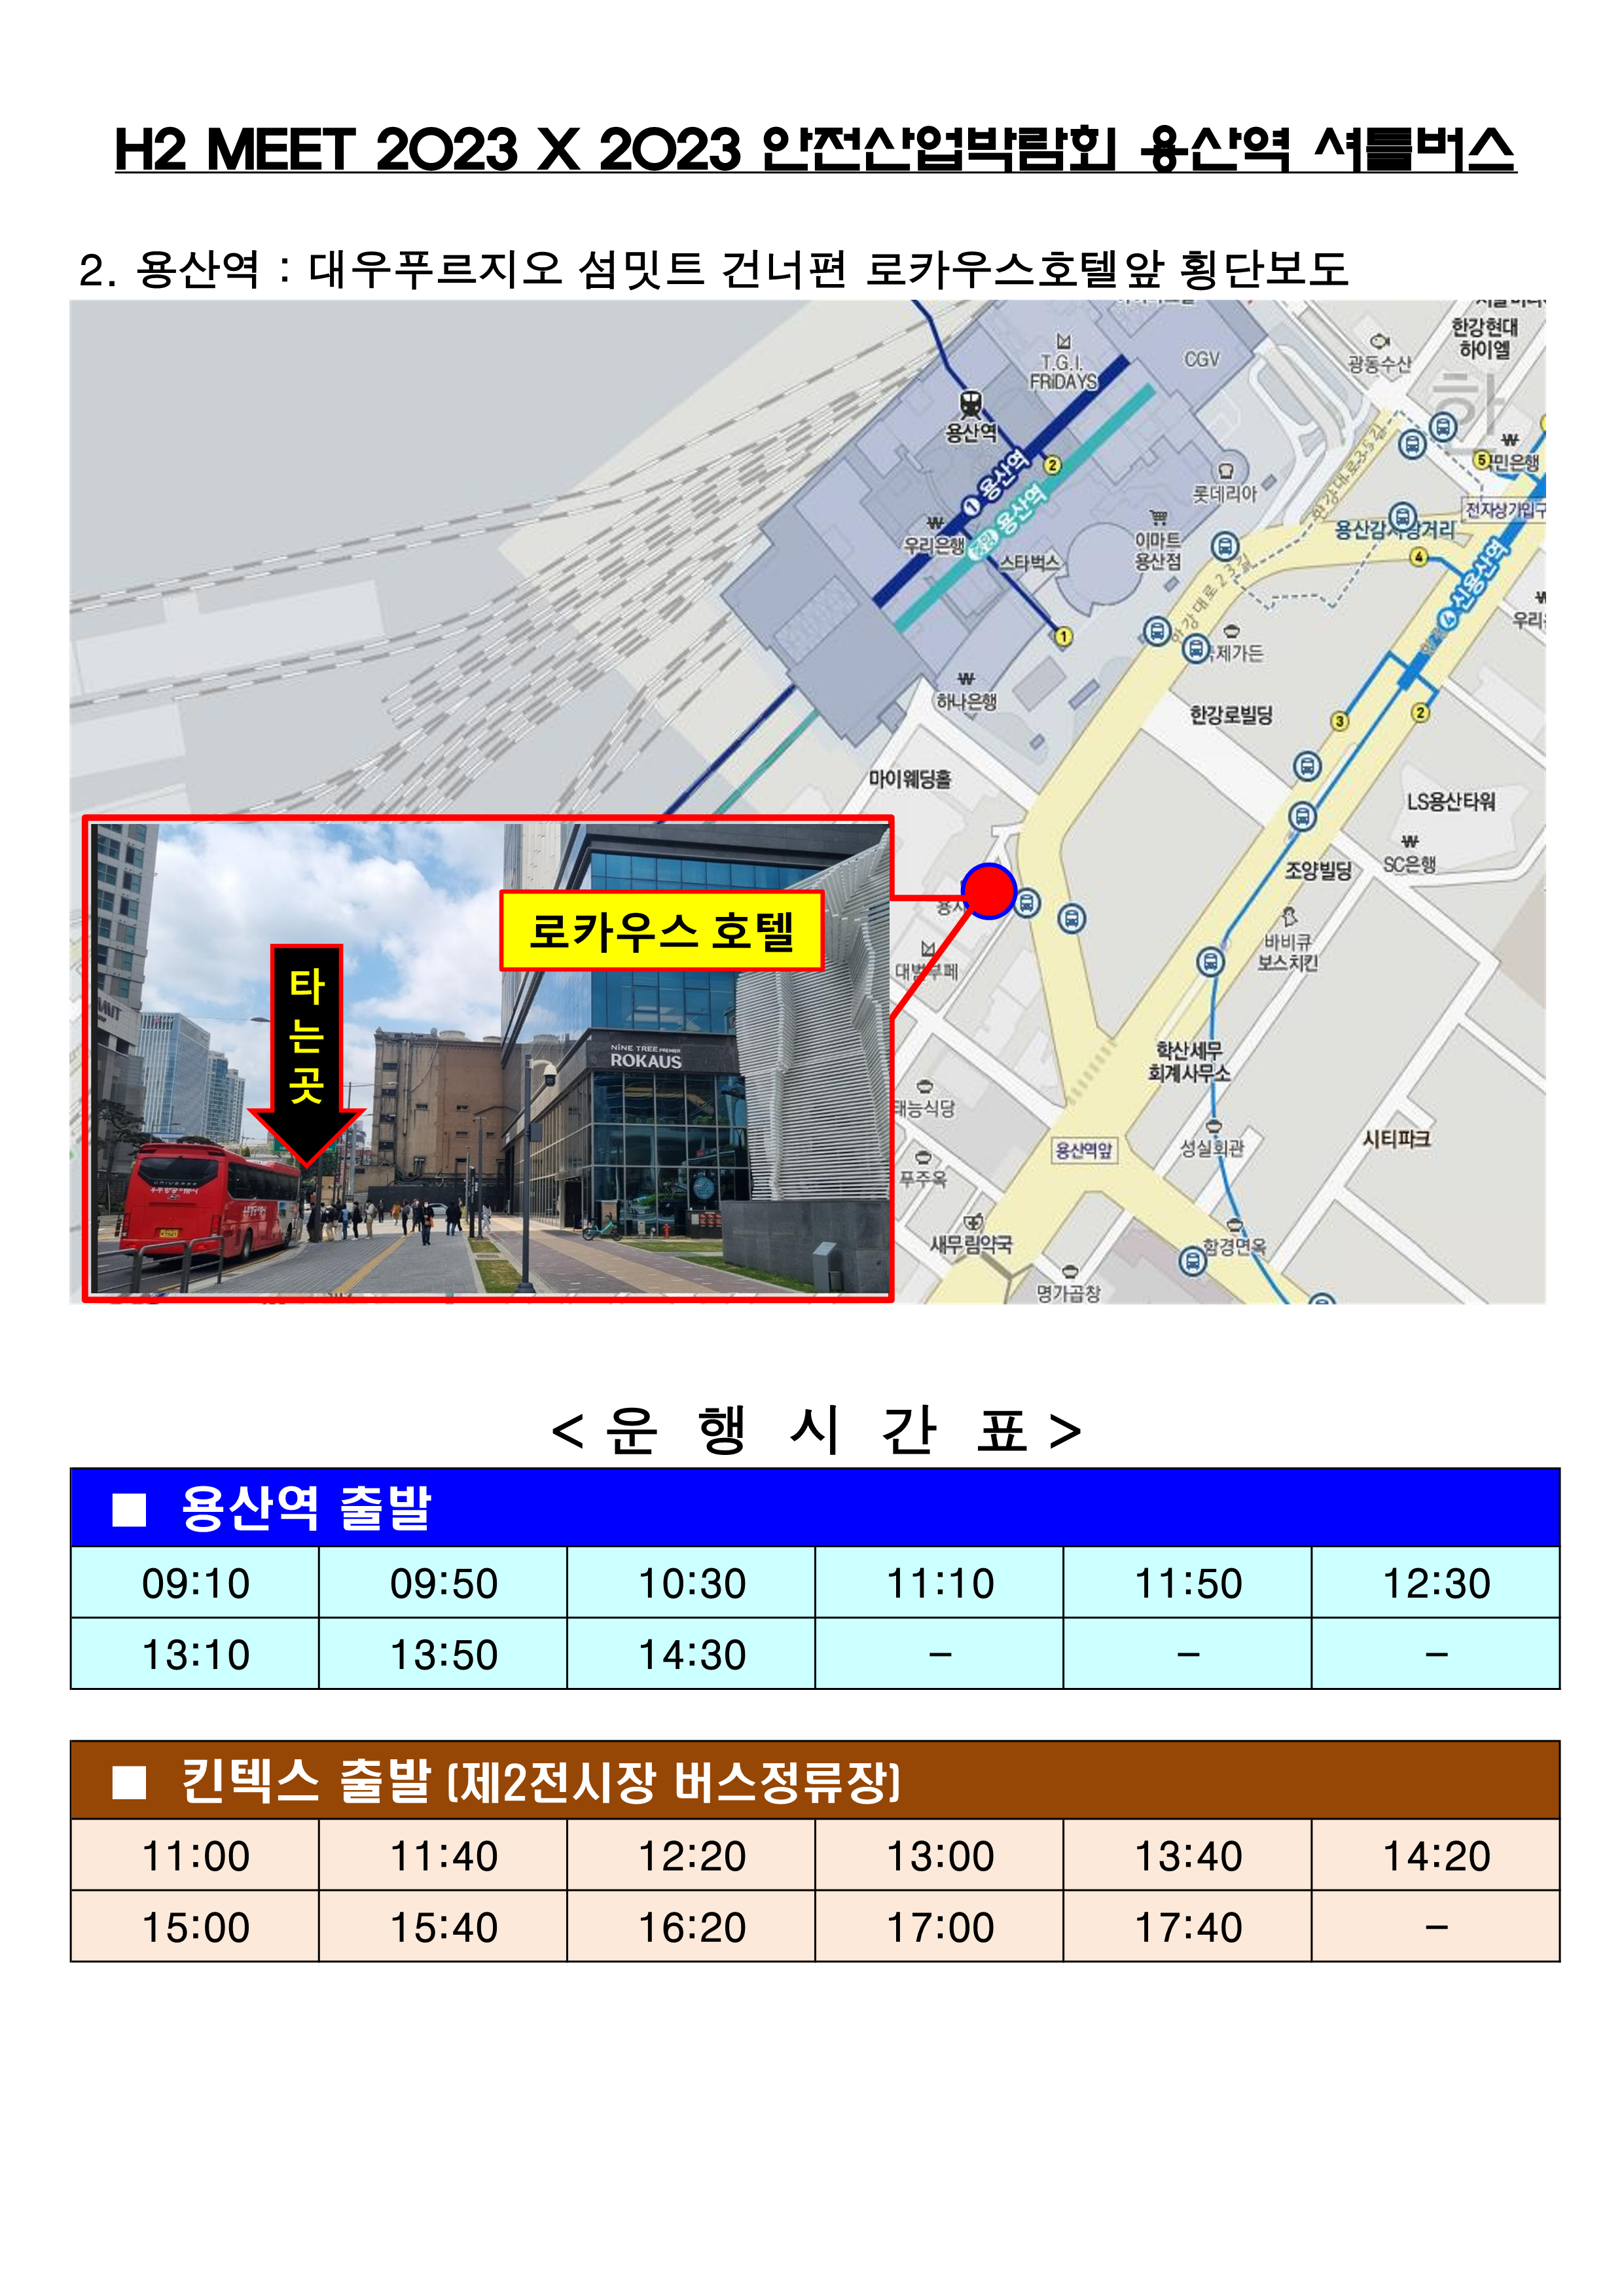 서울역,용산역-킨텍스 셔틀 승차장소 및 시간표(H2 MEET_안전산업박람회 제휴)_2.png